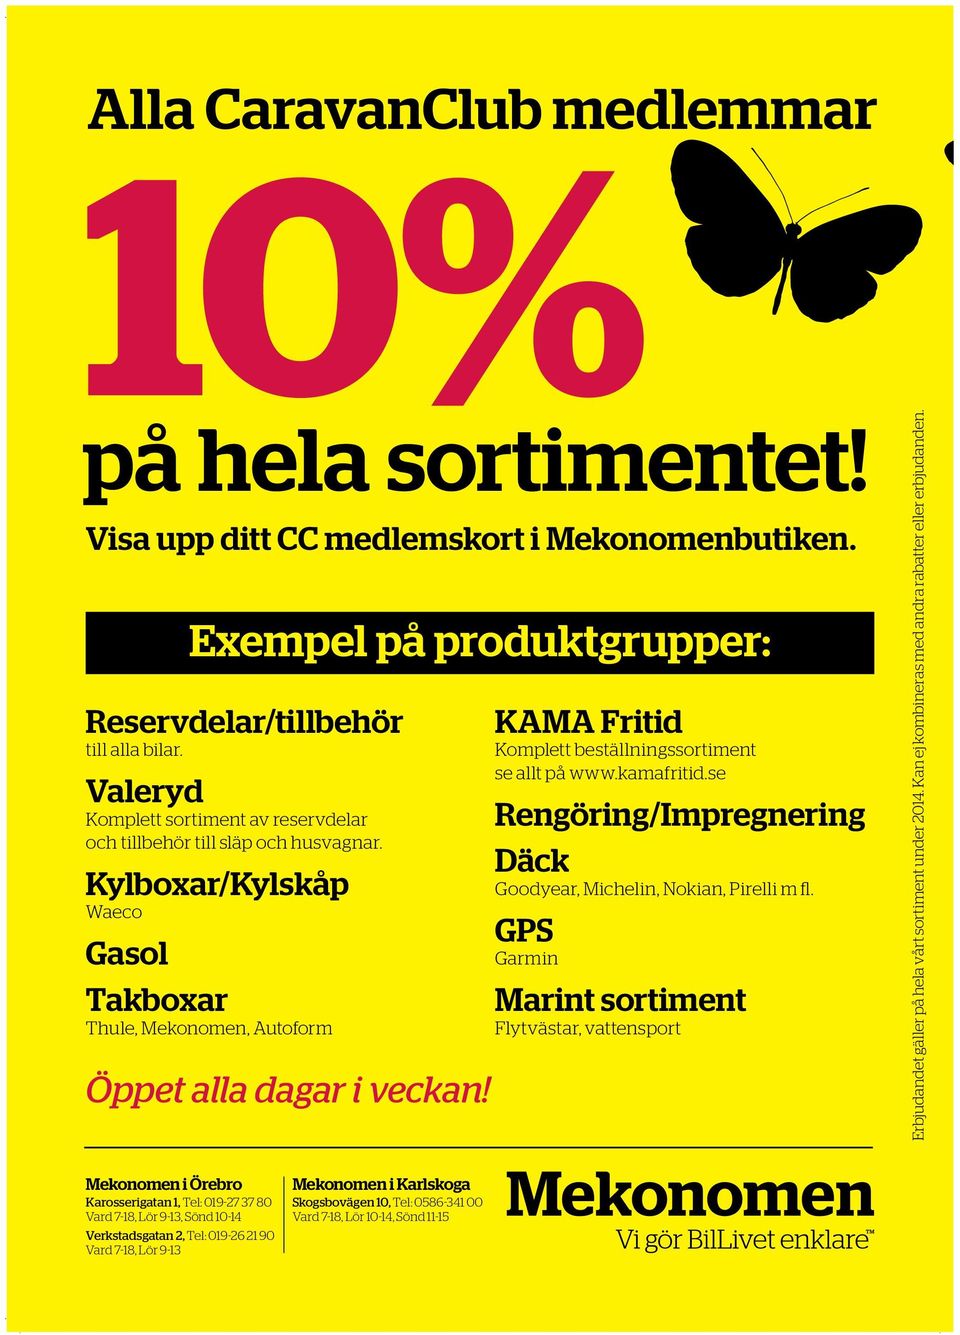 KAMA Fritid Komplett beställningssortiment se allt på www.kamafritid.se Rengöring/Impregnering Däck Goodyear, Michelin, Nokian, Pirelli m fl.